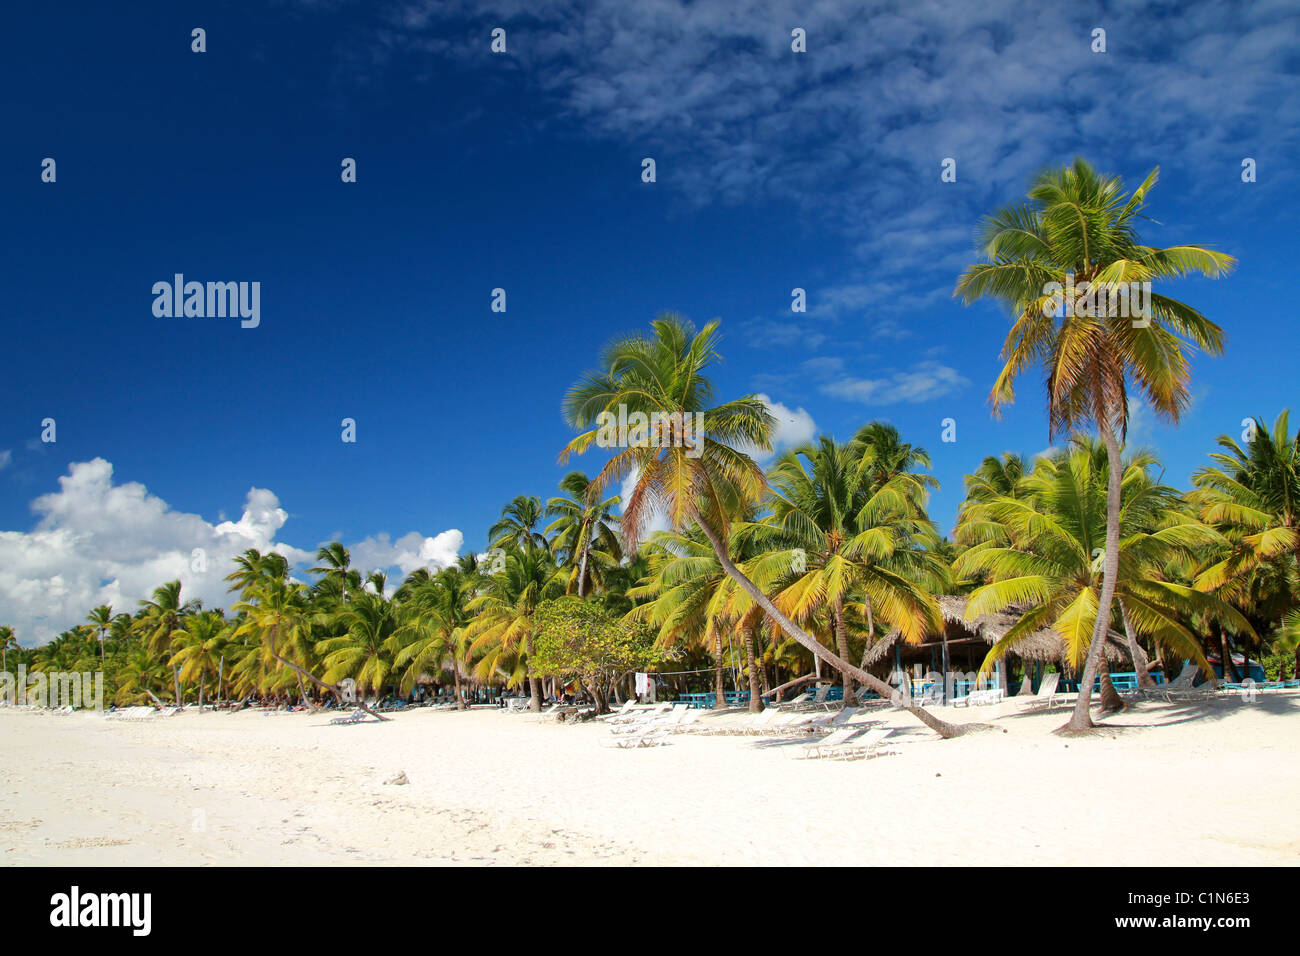 Palmiers sur la plage tropicale sur la mer des Caraïbes Banque D'Images